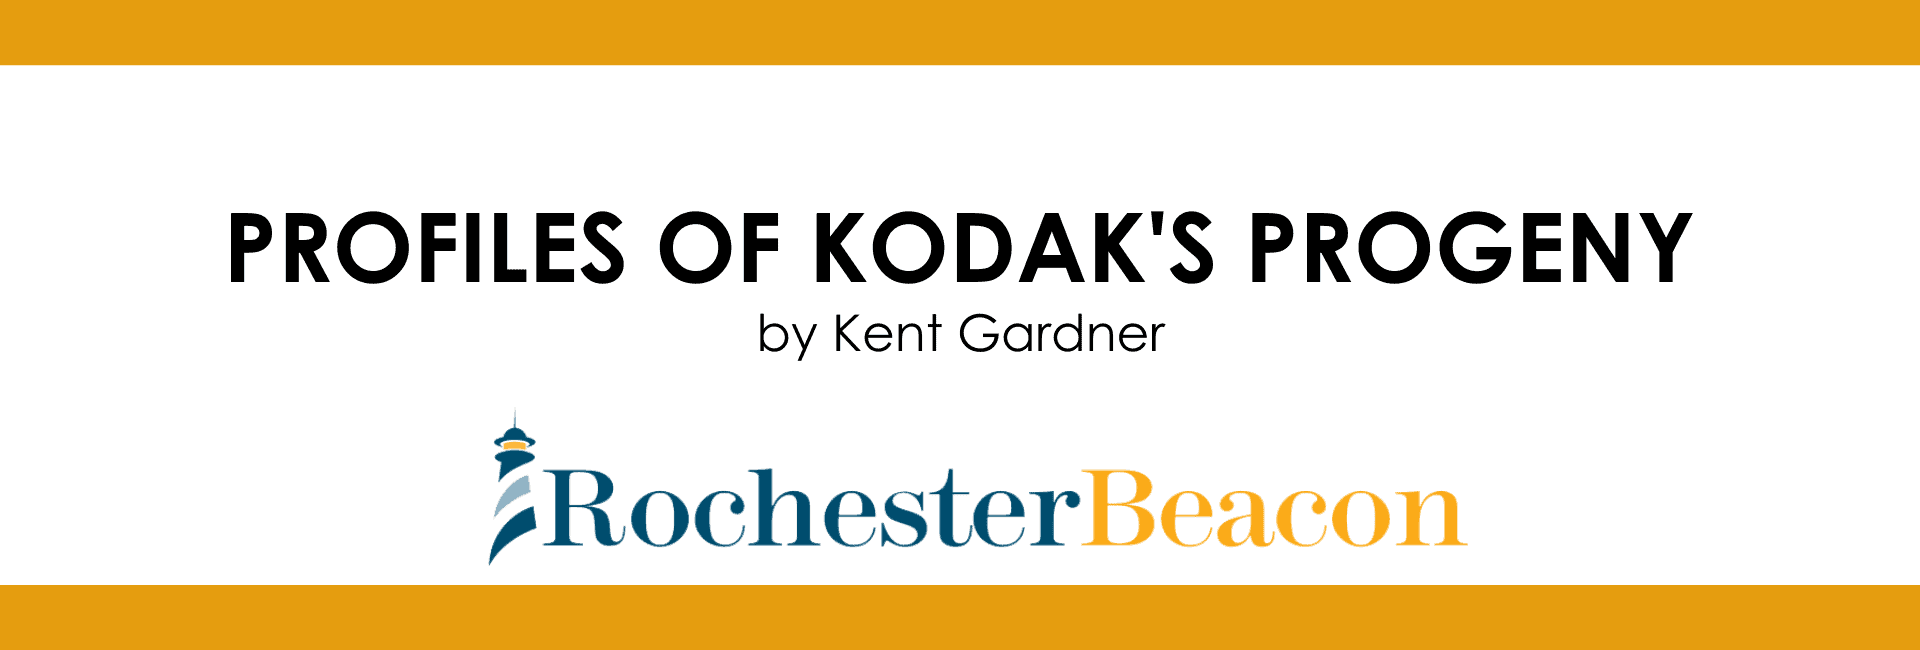 Rochester Beacon Highlights Kodak Legacy Businesses | OLEDWorks